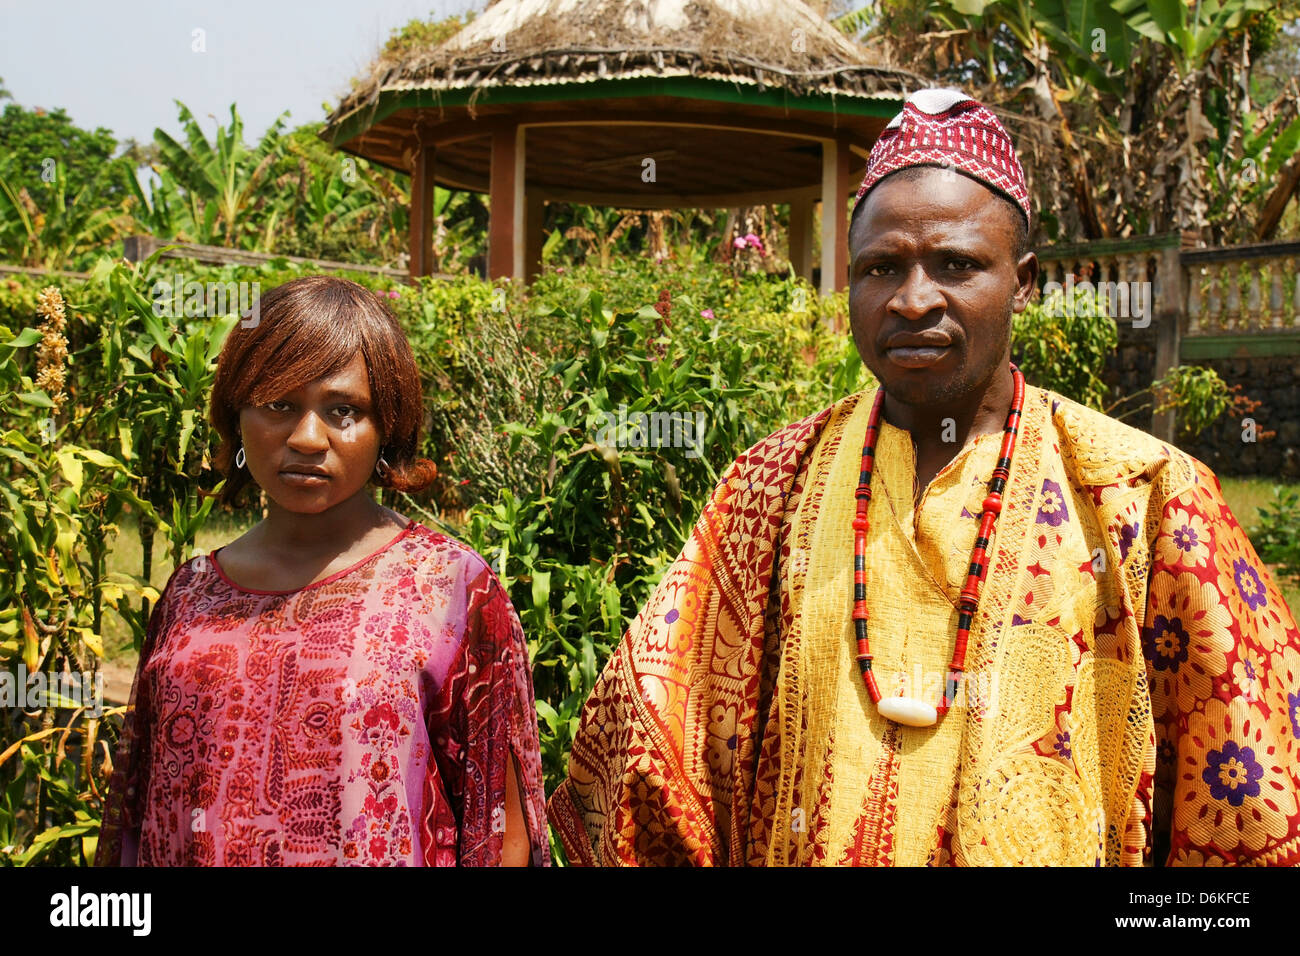 Afrika, Kamerun, FONGO TONGO - 20 Januar: Afrikanisches Dorf Chief mit schwangeren jungen Frau am 20. Januar 2013 in Kamerun. Viele Stockfoto